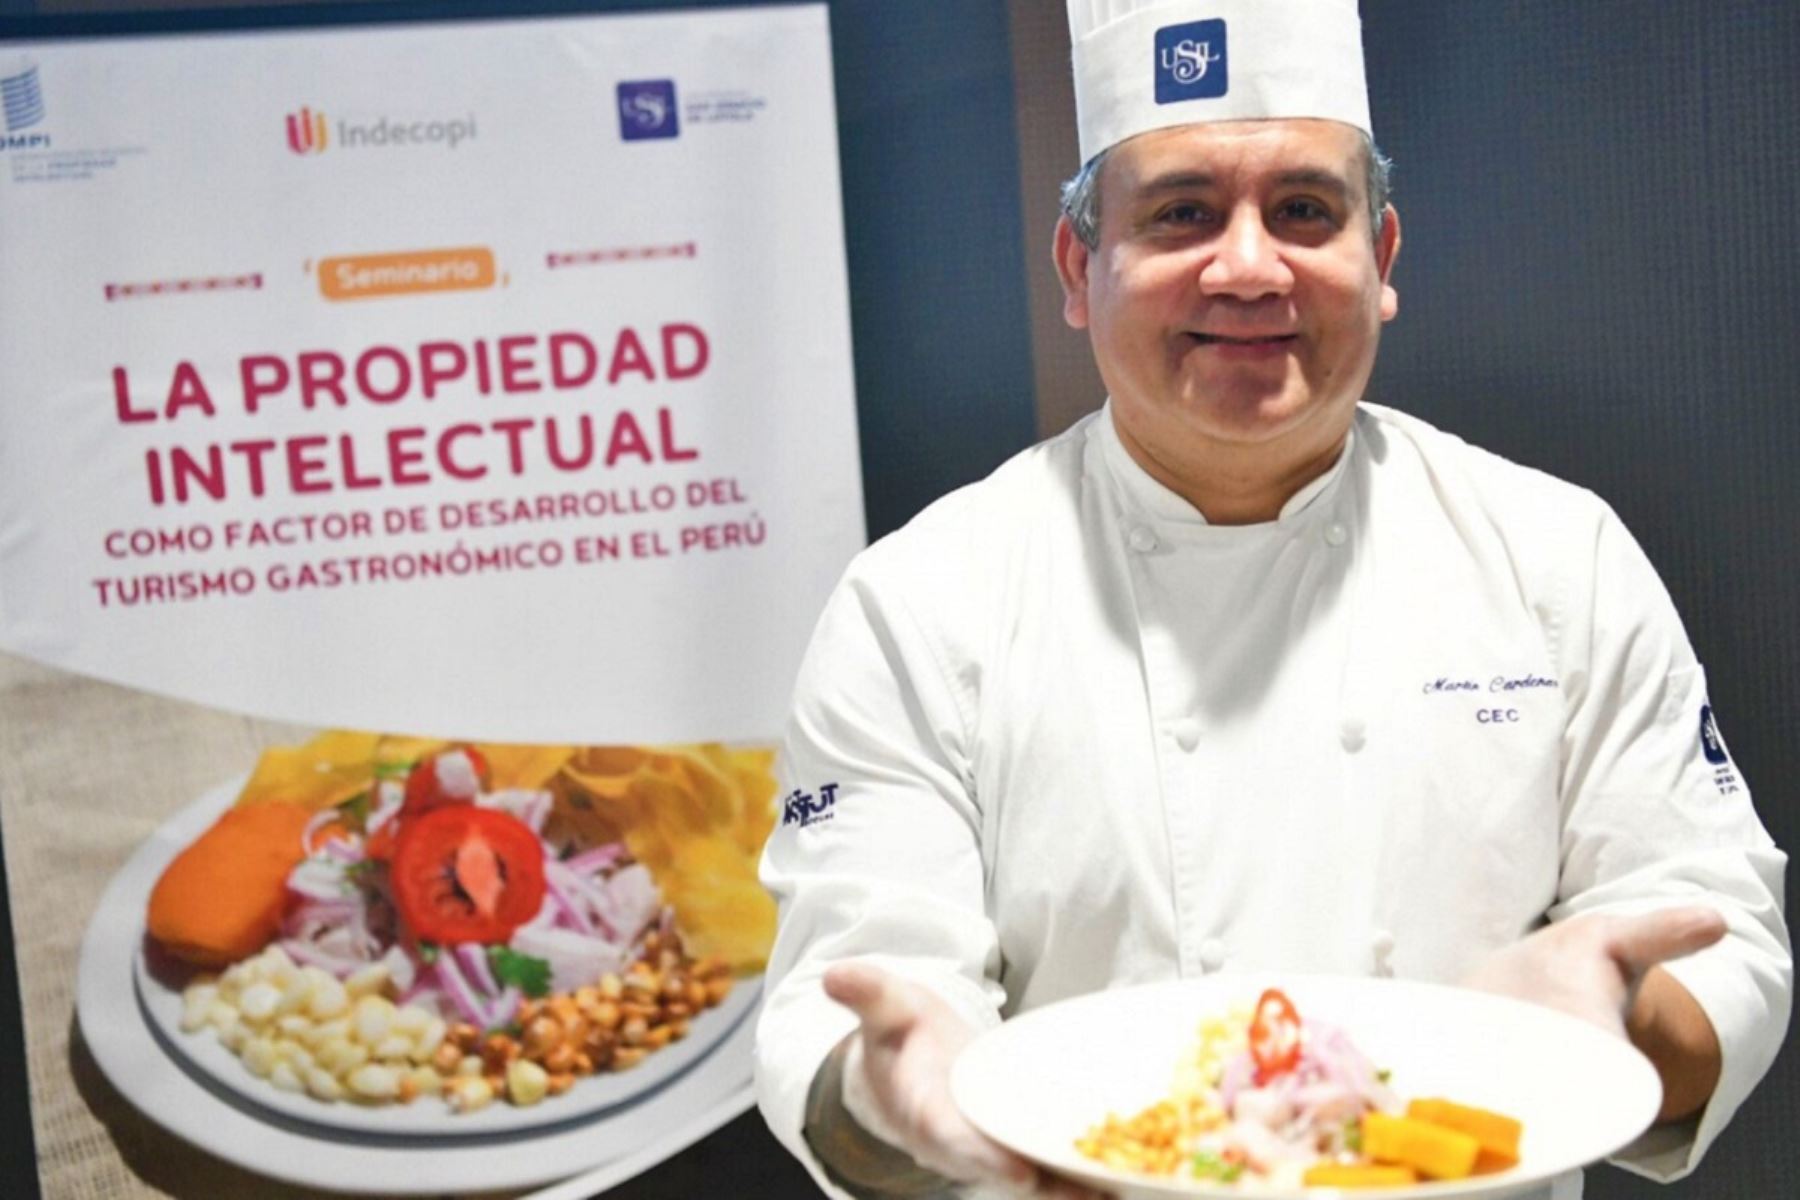 El Indecopi puede proteger los derechos de propiedad intelectual de nuestra afamada gastronomía peruana. Foto: Cortesía.